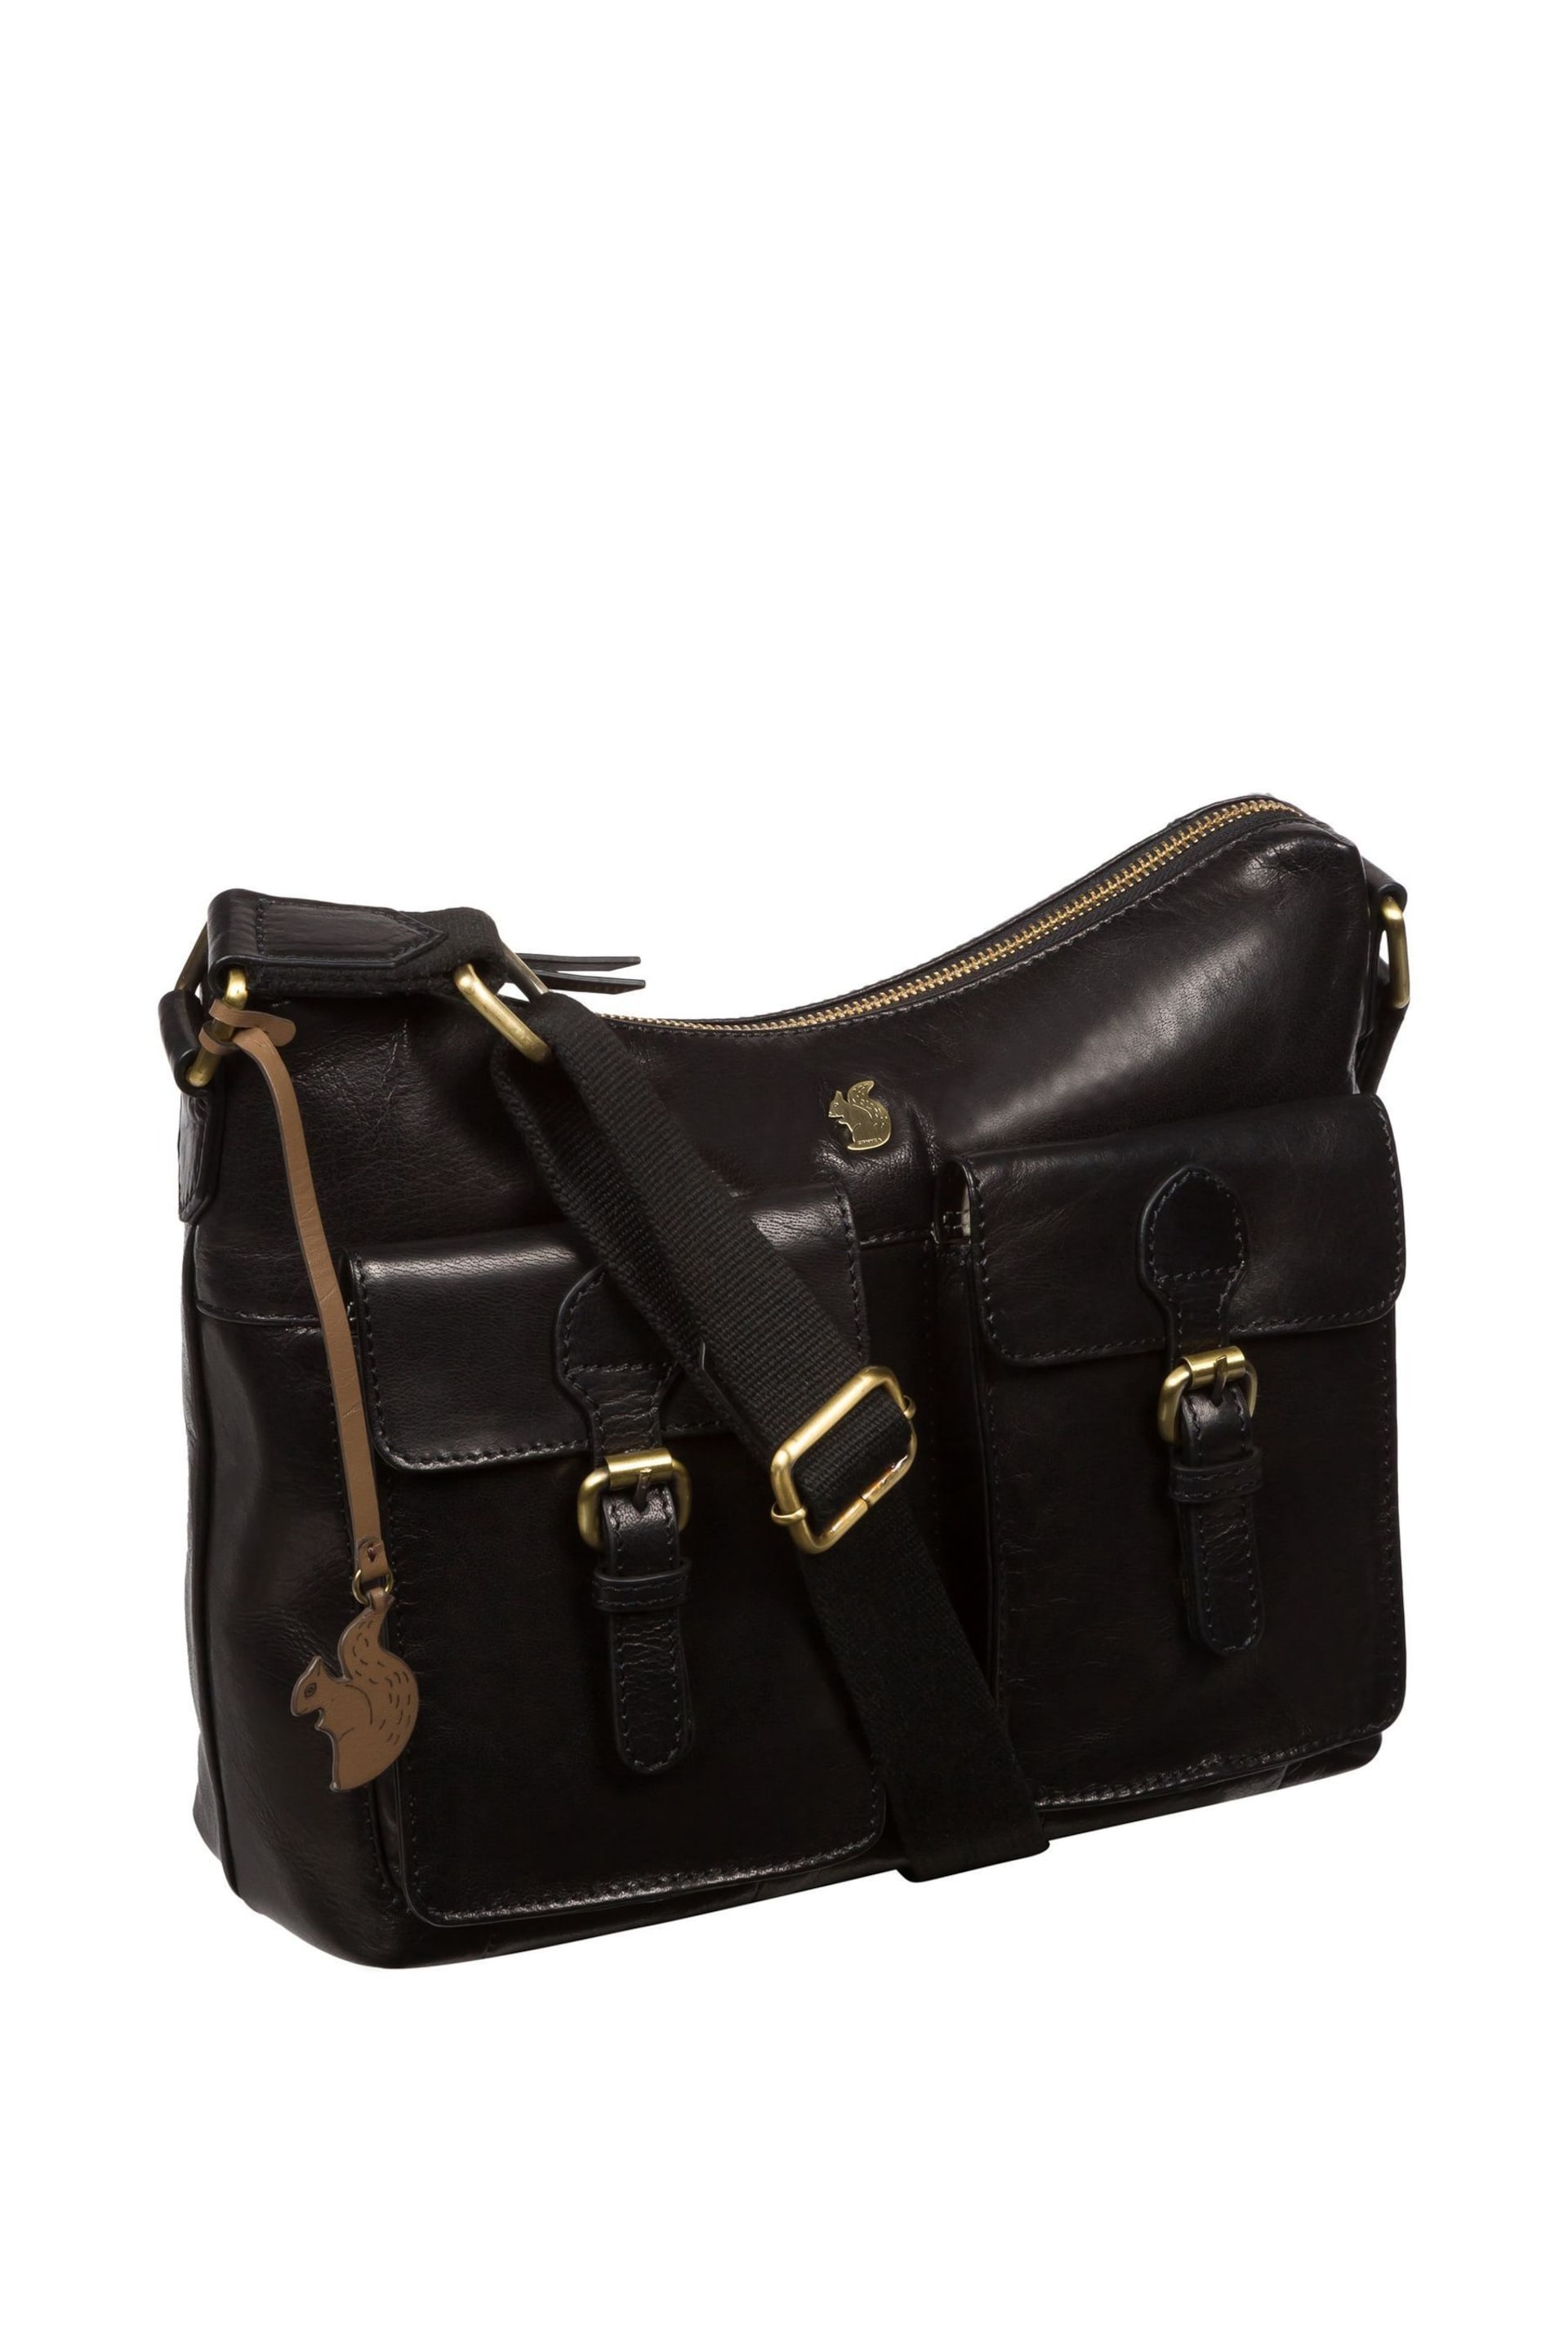 Conkca Nancie Leather Shoulder Bag - Image 5 of 6